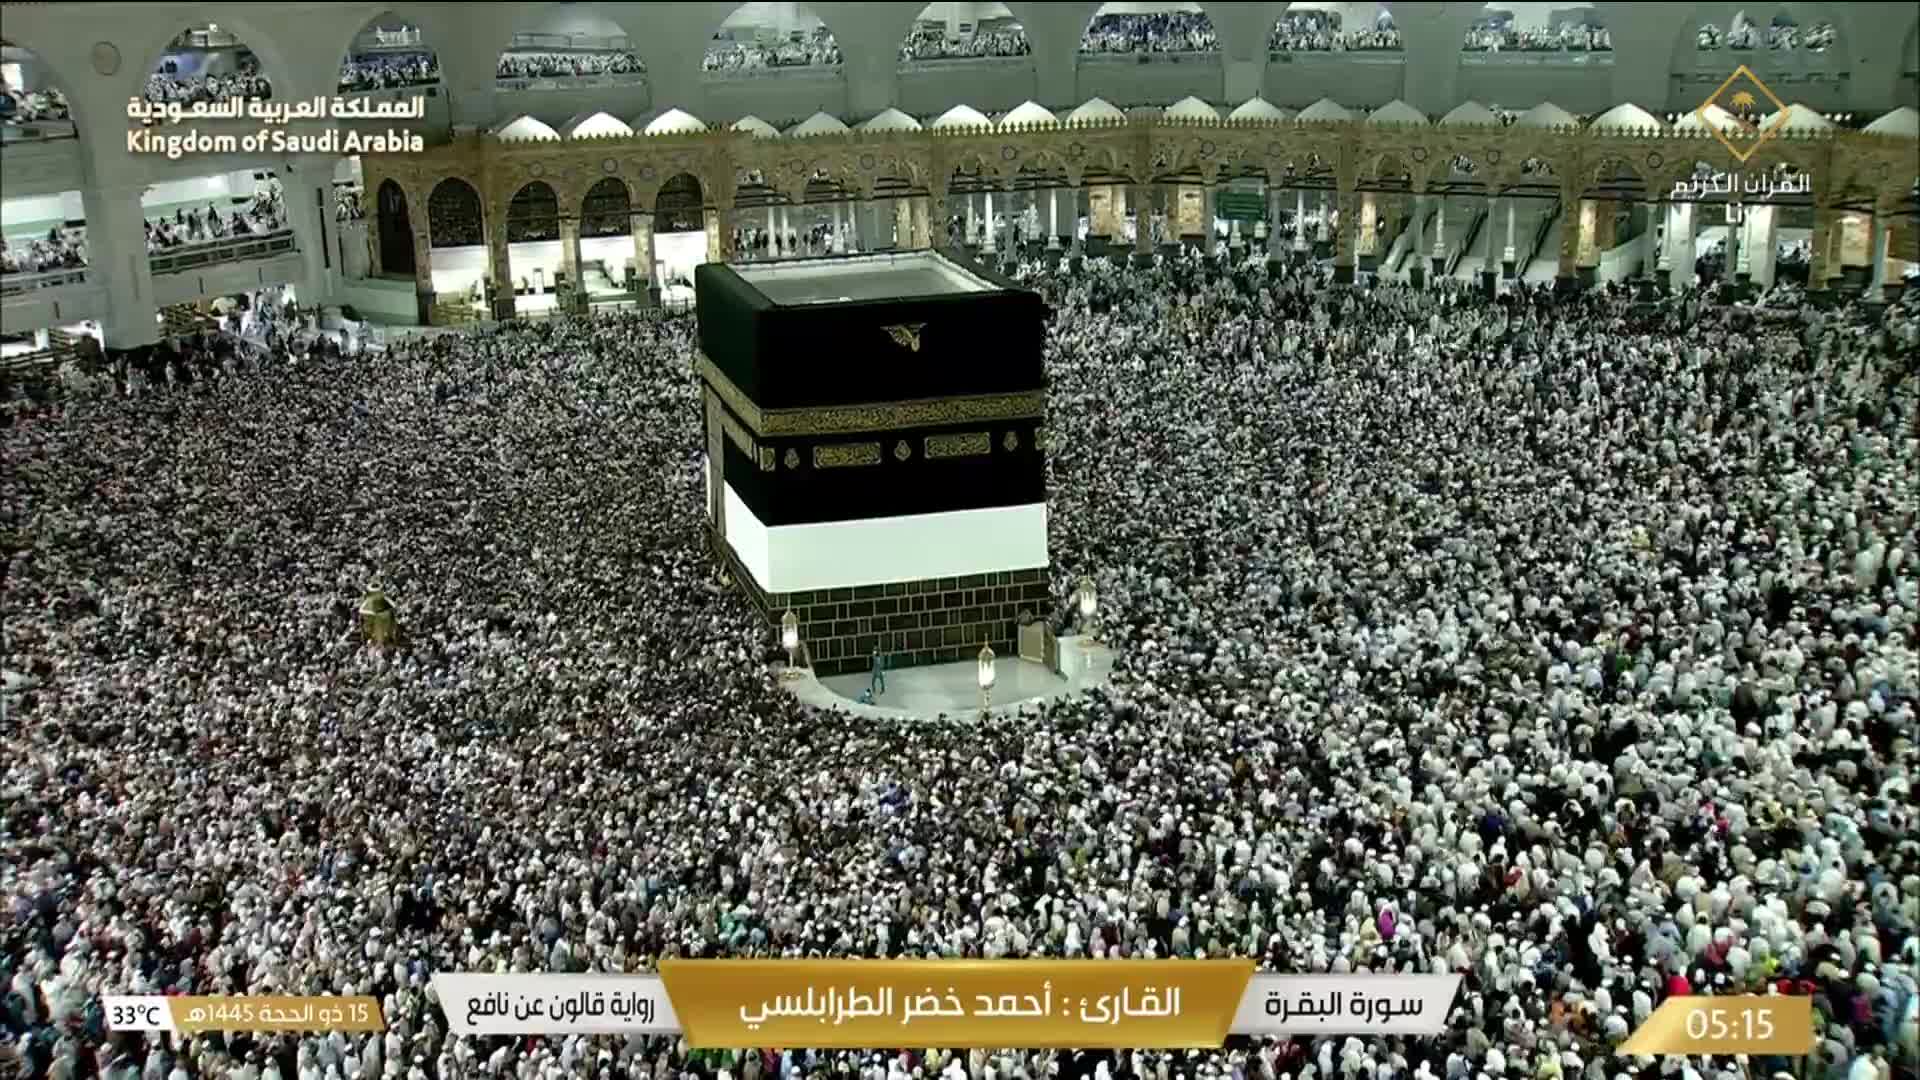 La Mecque Di. 05:36